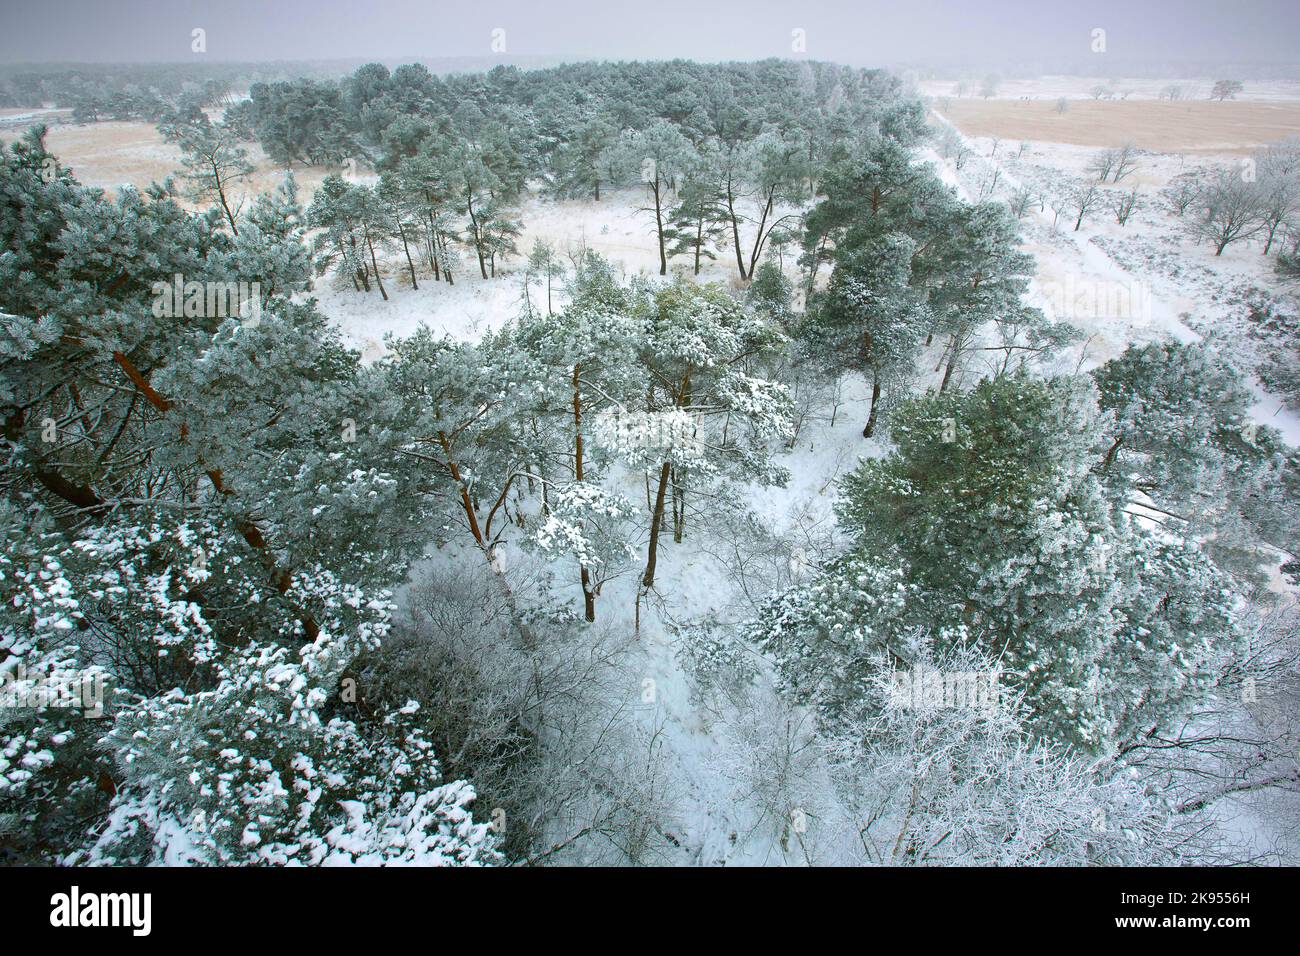 PIN écossais, PIN écossais (Pinus sylvestris), pin écossais dans la neige, vue aérienne, Belgique, Anvers, Kalmthout, heide de Kalmthoutse Banque D'Images